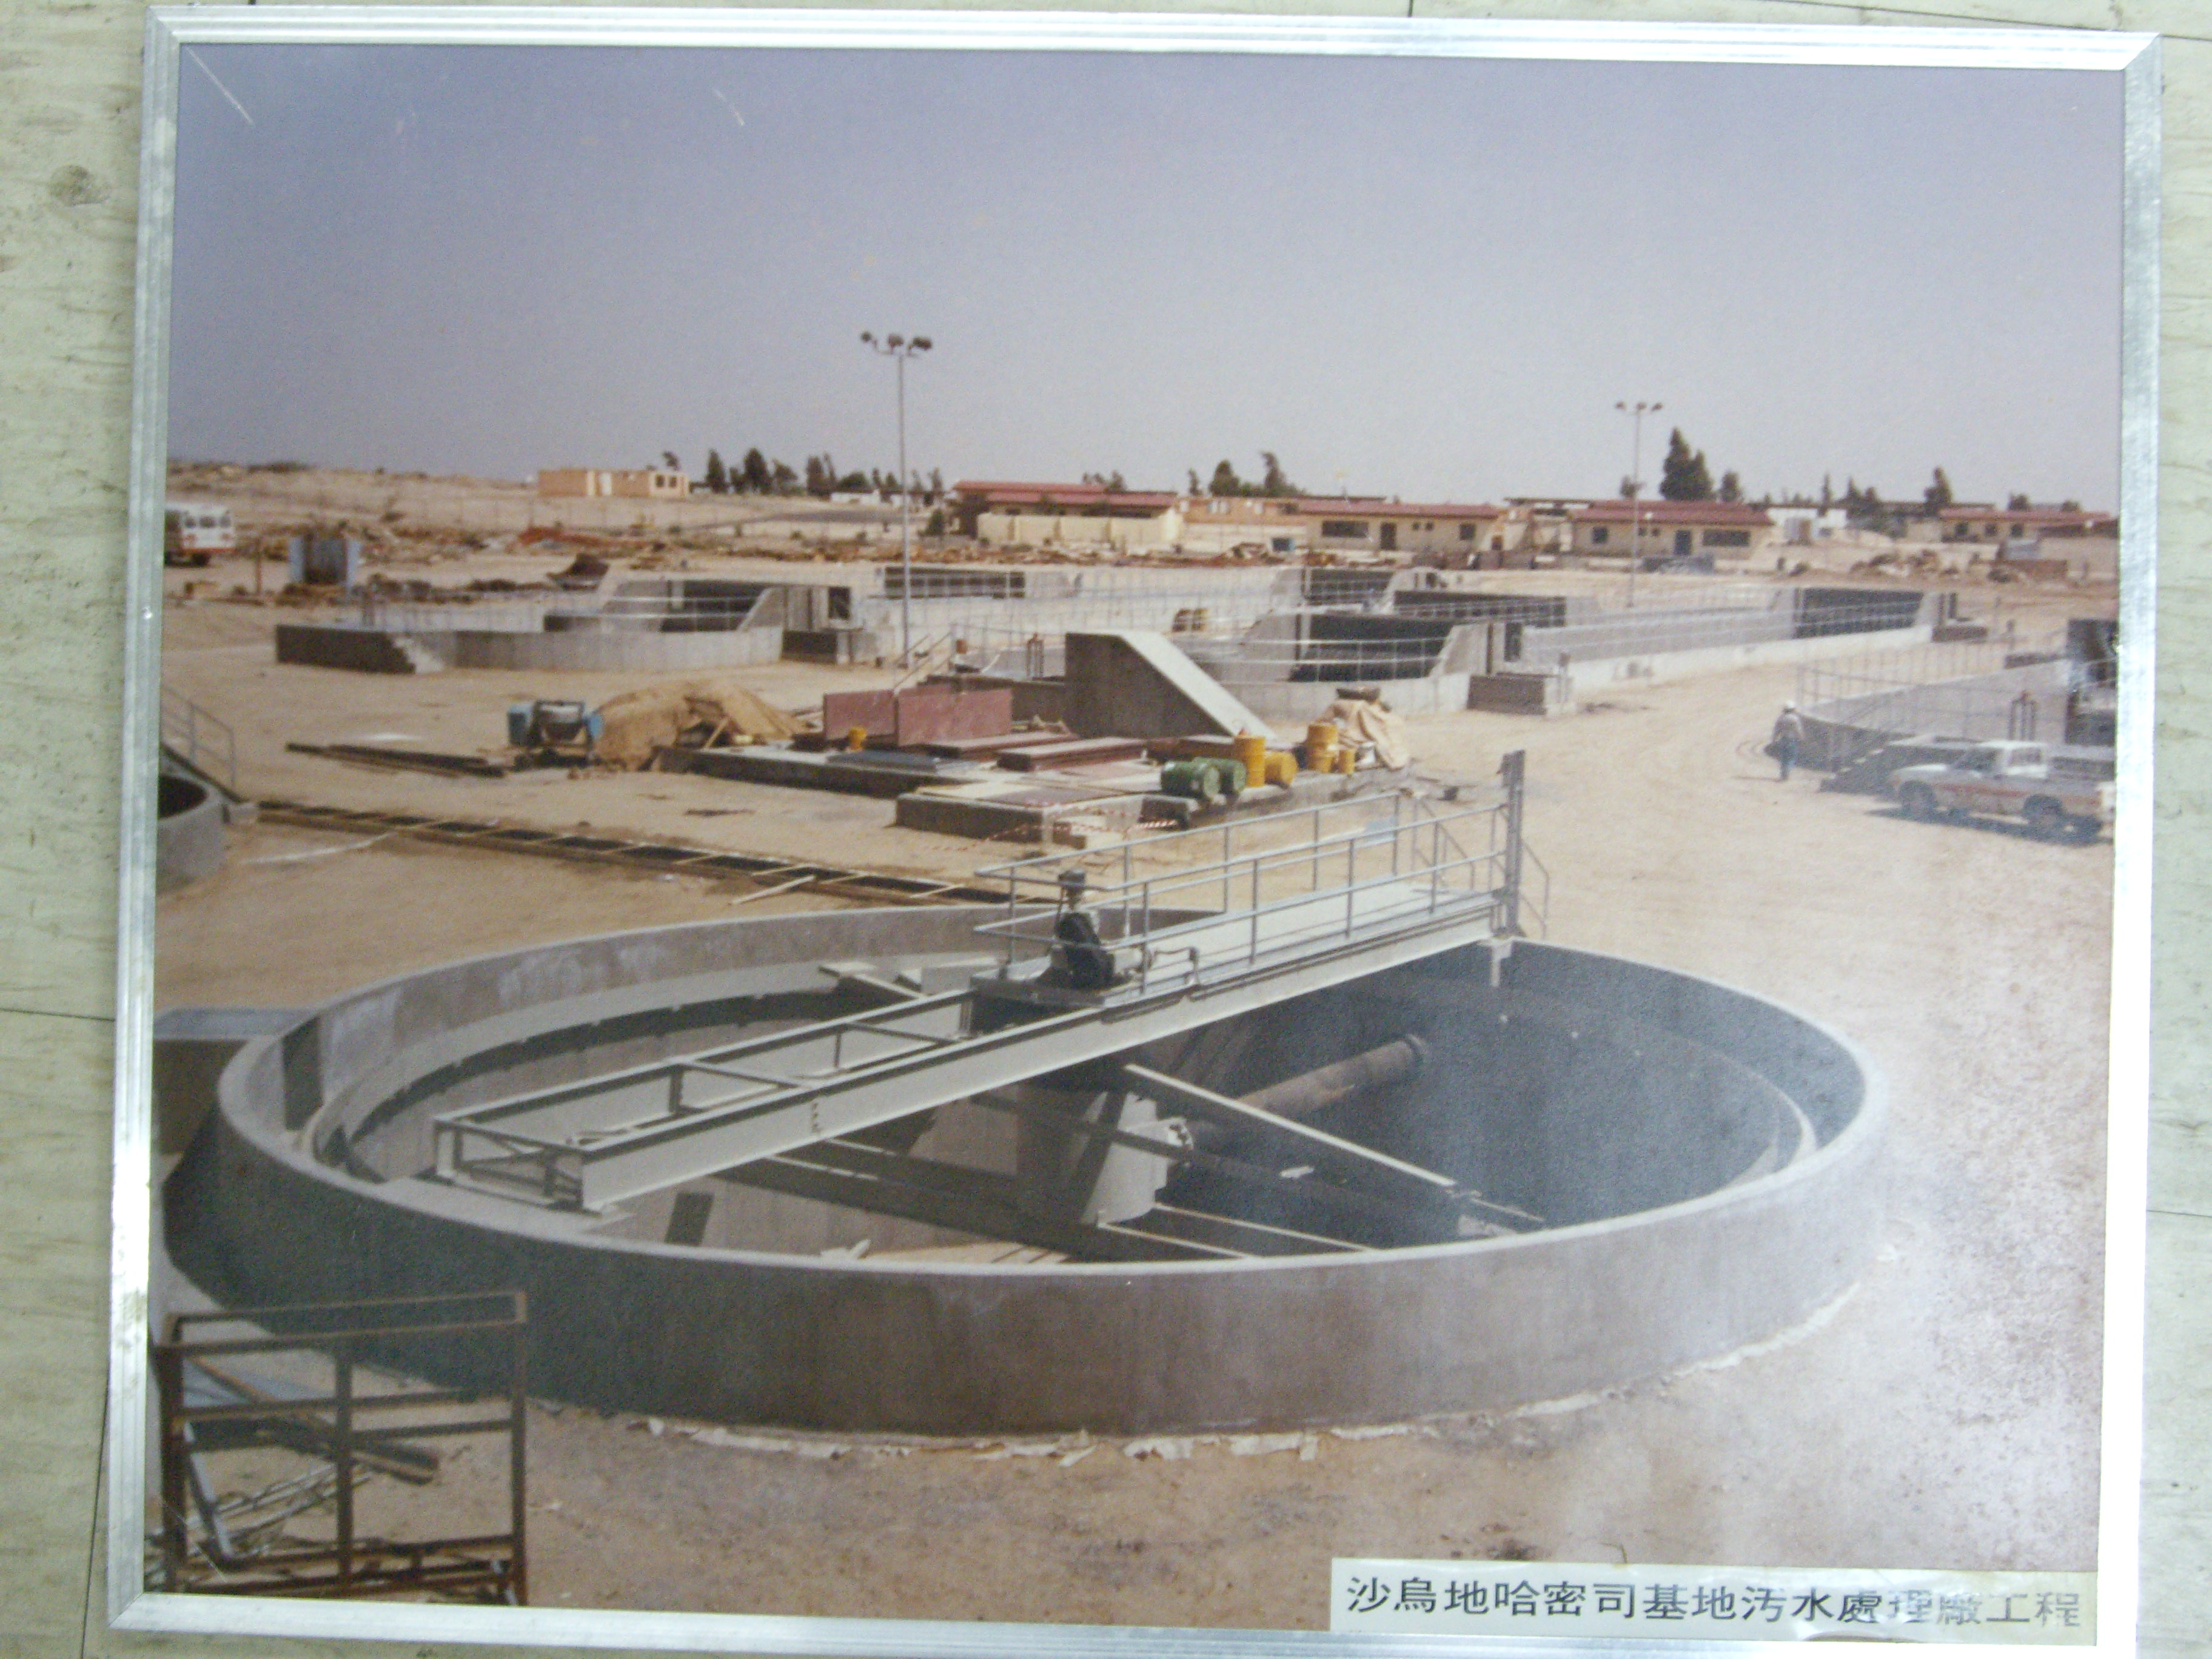 沙烏地哈密斯司基地污水處理廠工程(裱框照)